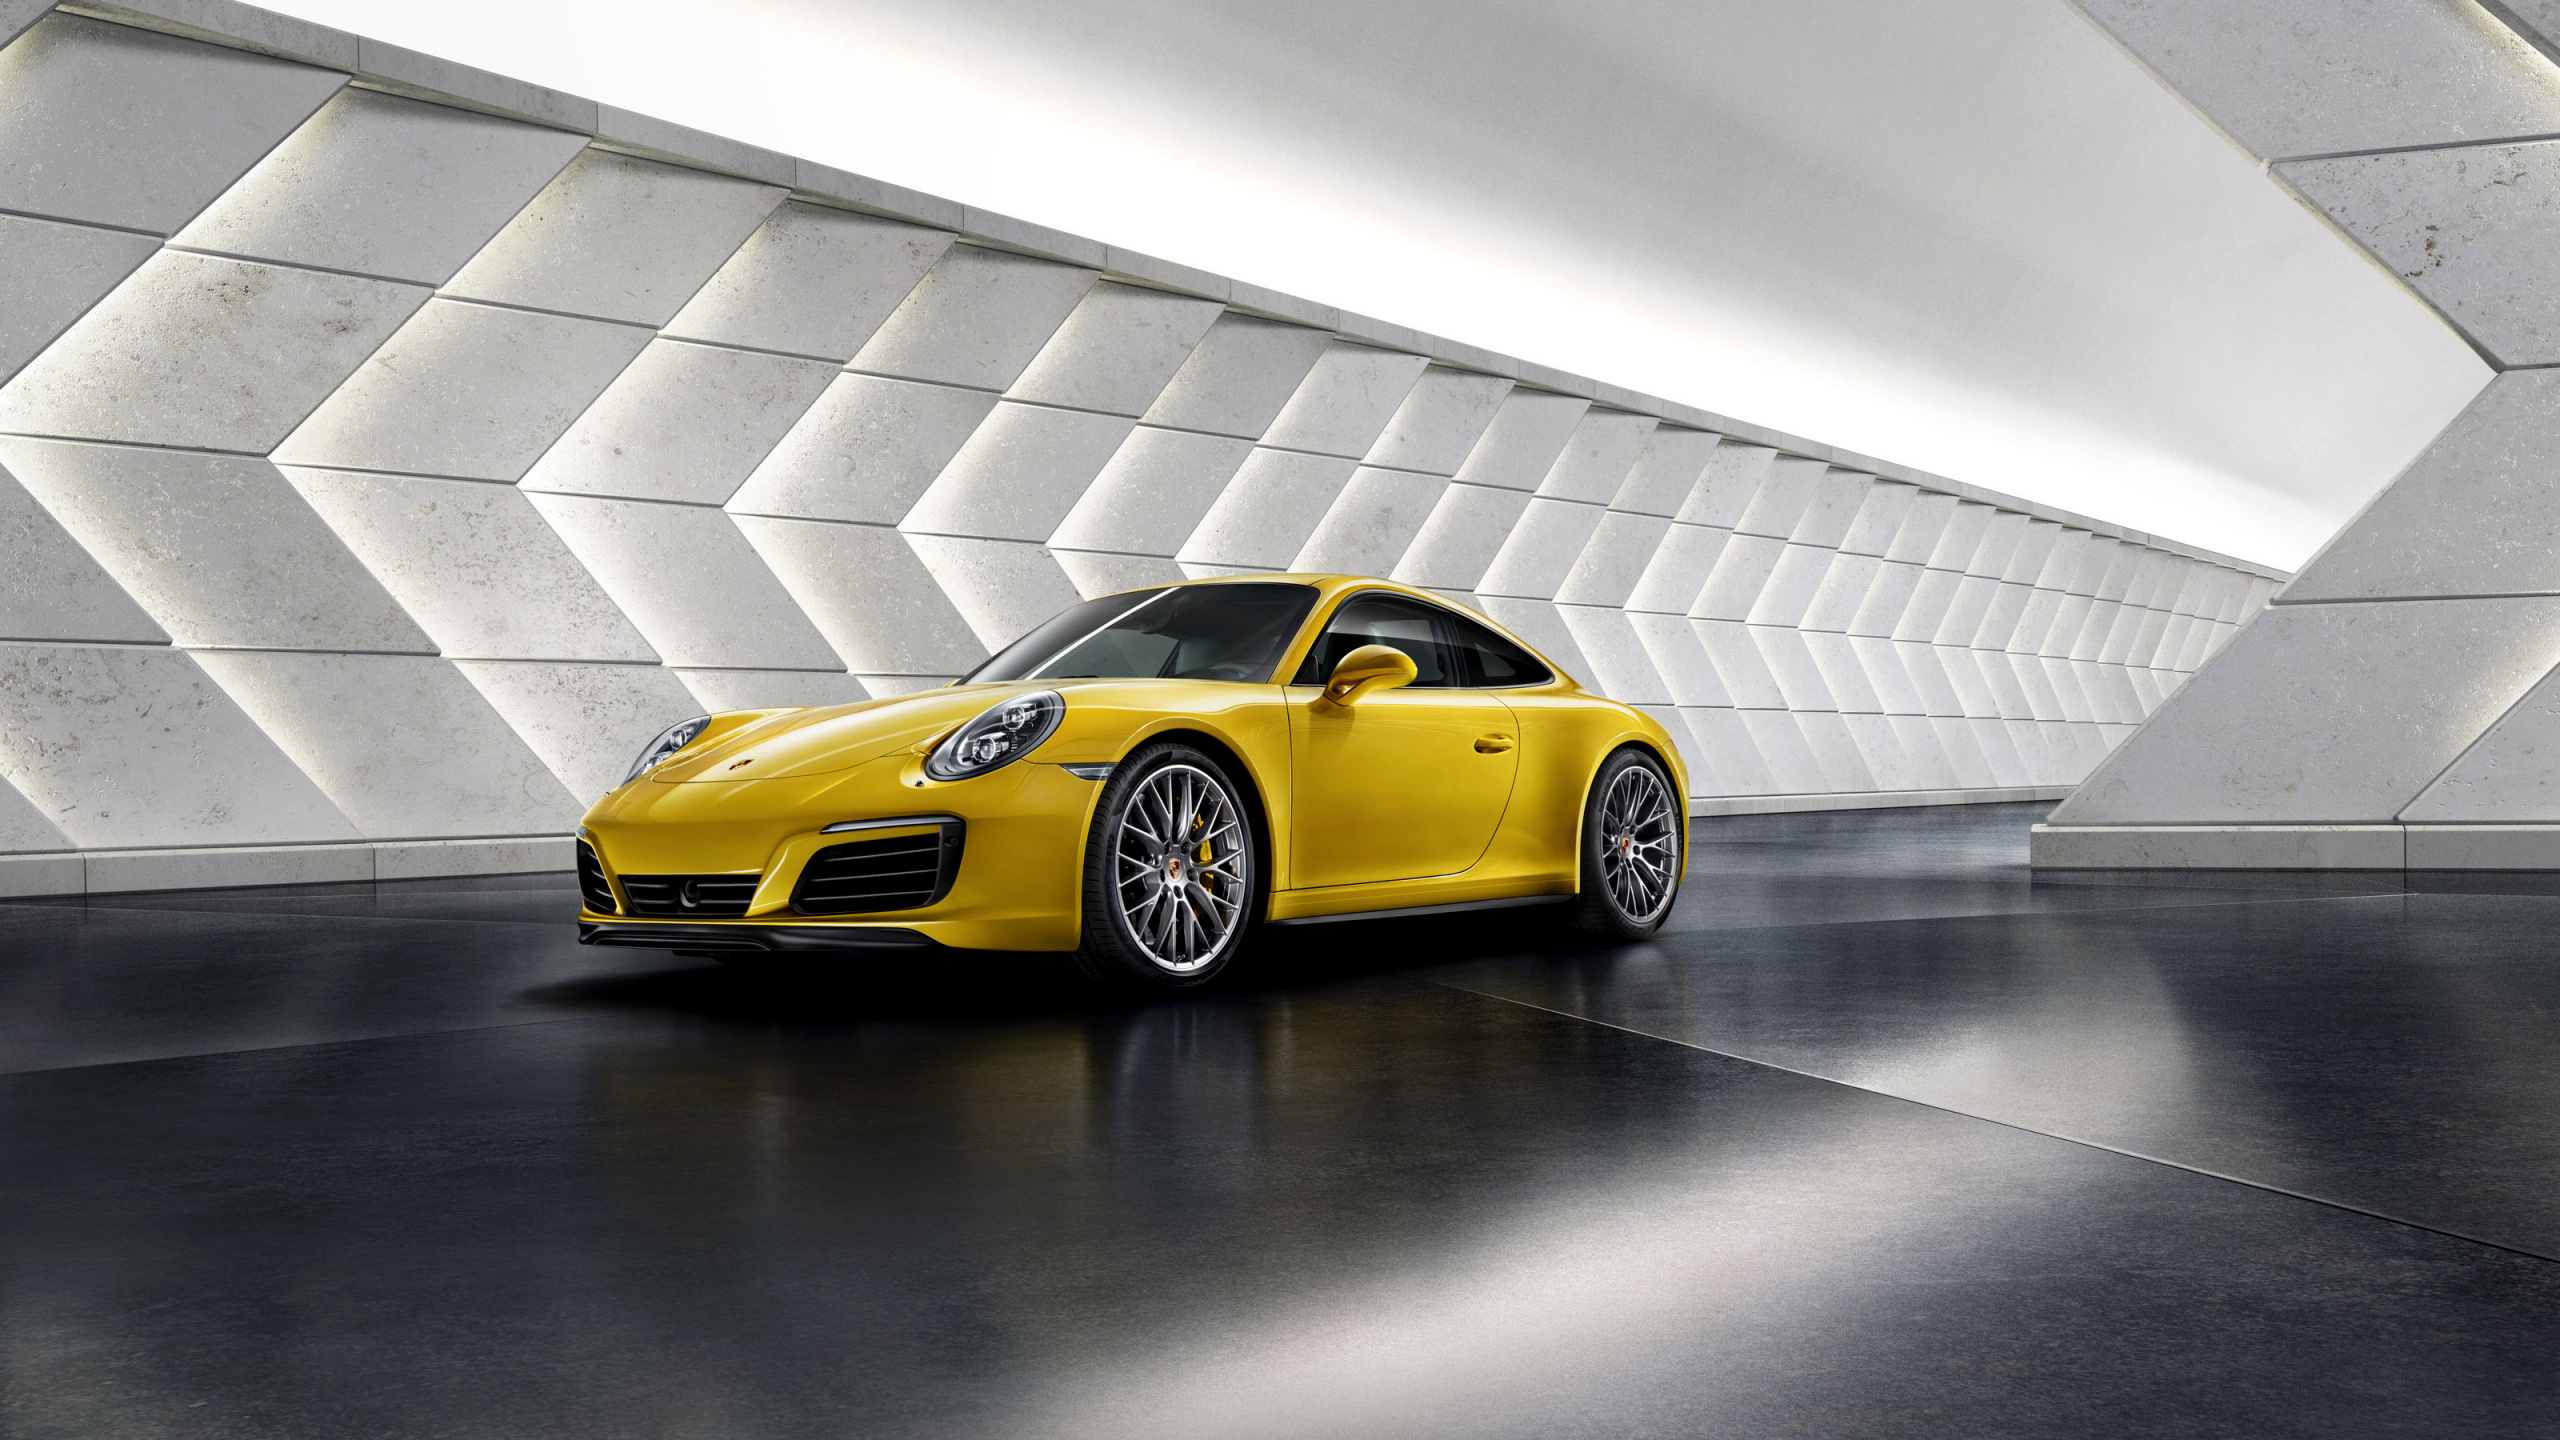 Porsche 911 Jaune Garée Sur un Trottoir en Béton Gris. Wallpaper in 2560x1440 Resolution